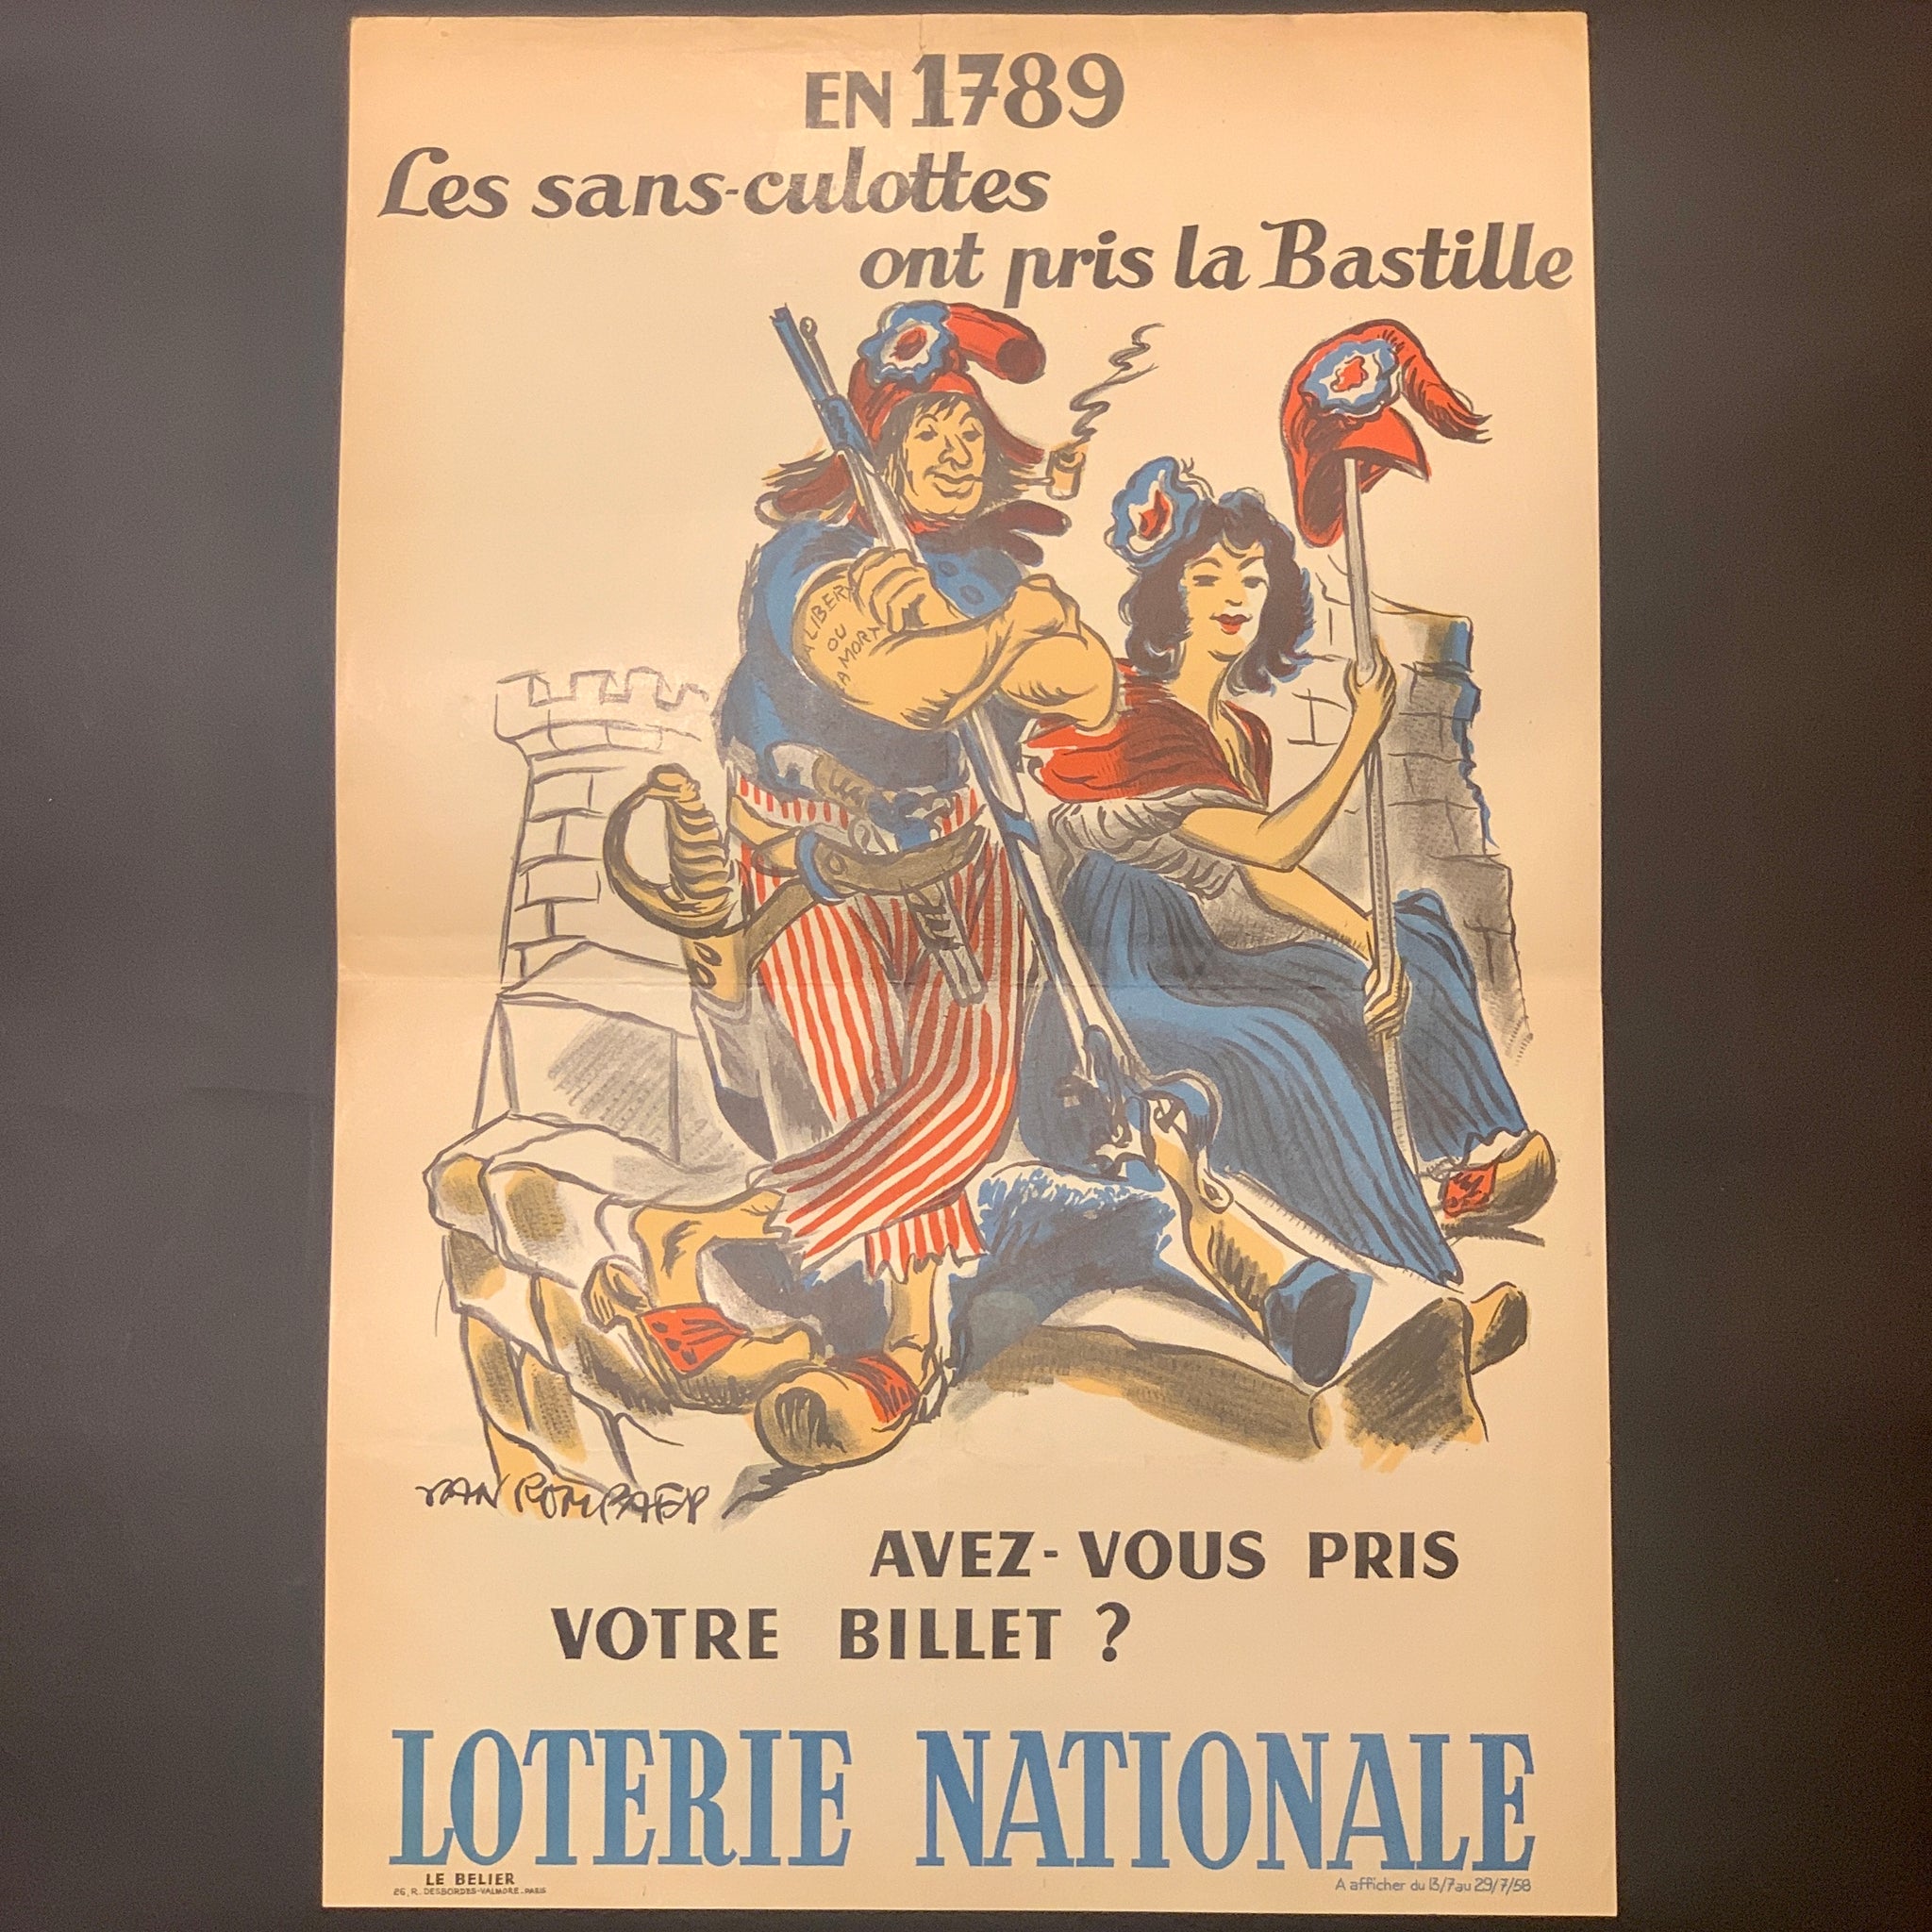 Fransk Van Rompaey “Loterie Nationale”plakat, fra 1958.